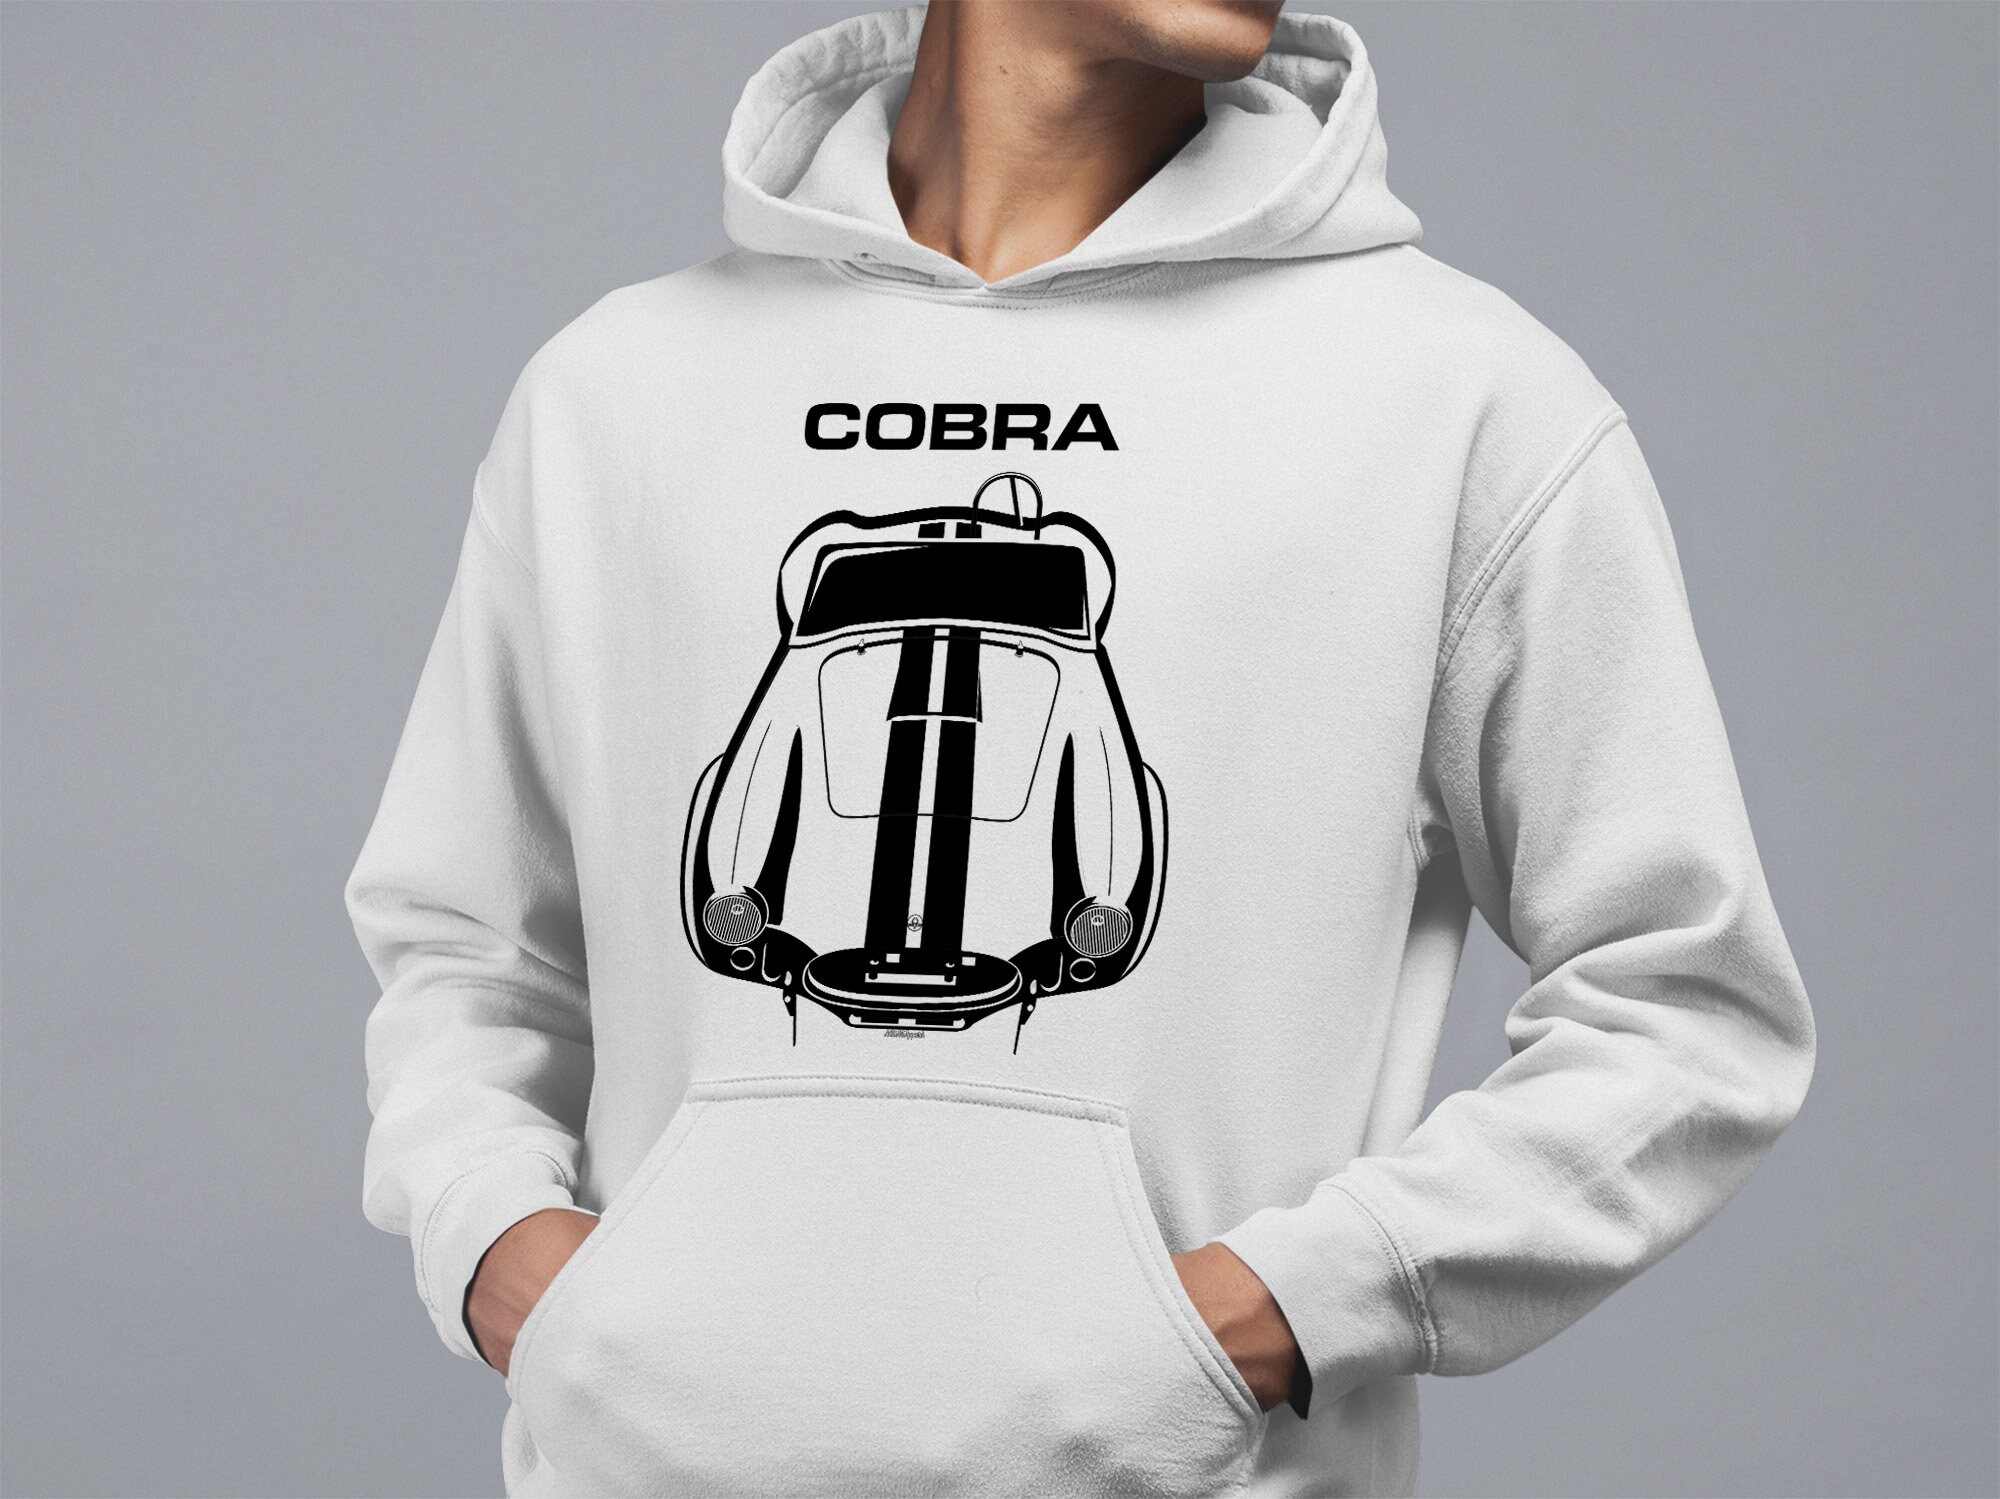 Shelby Cobra Zip Hoodie Mens Jacket Sweatshirt Black Printed Shelby Logos "SALE 